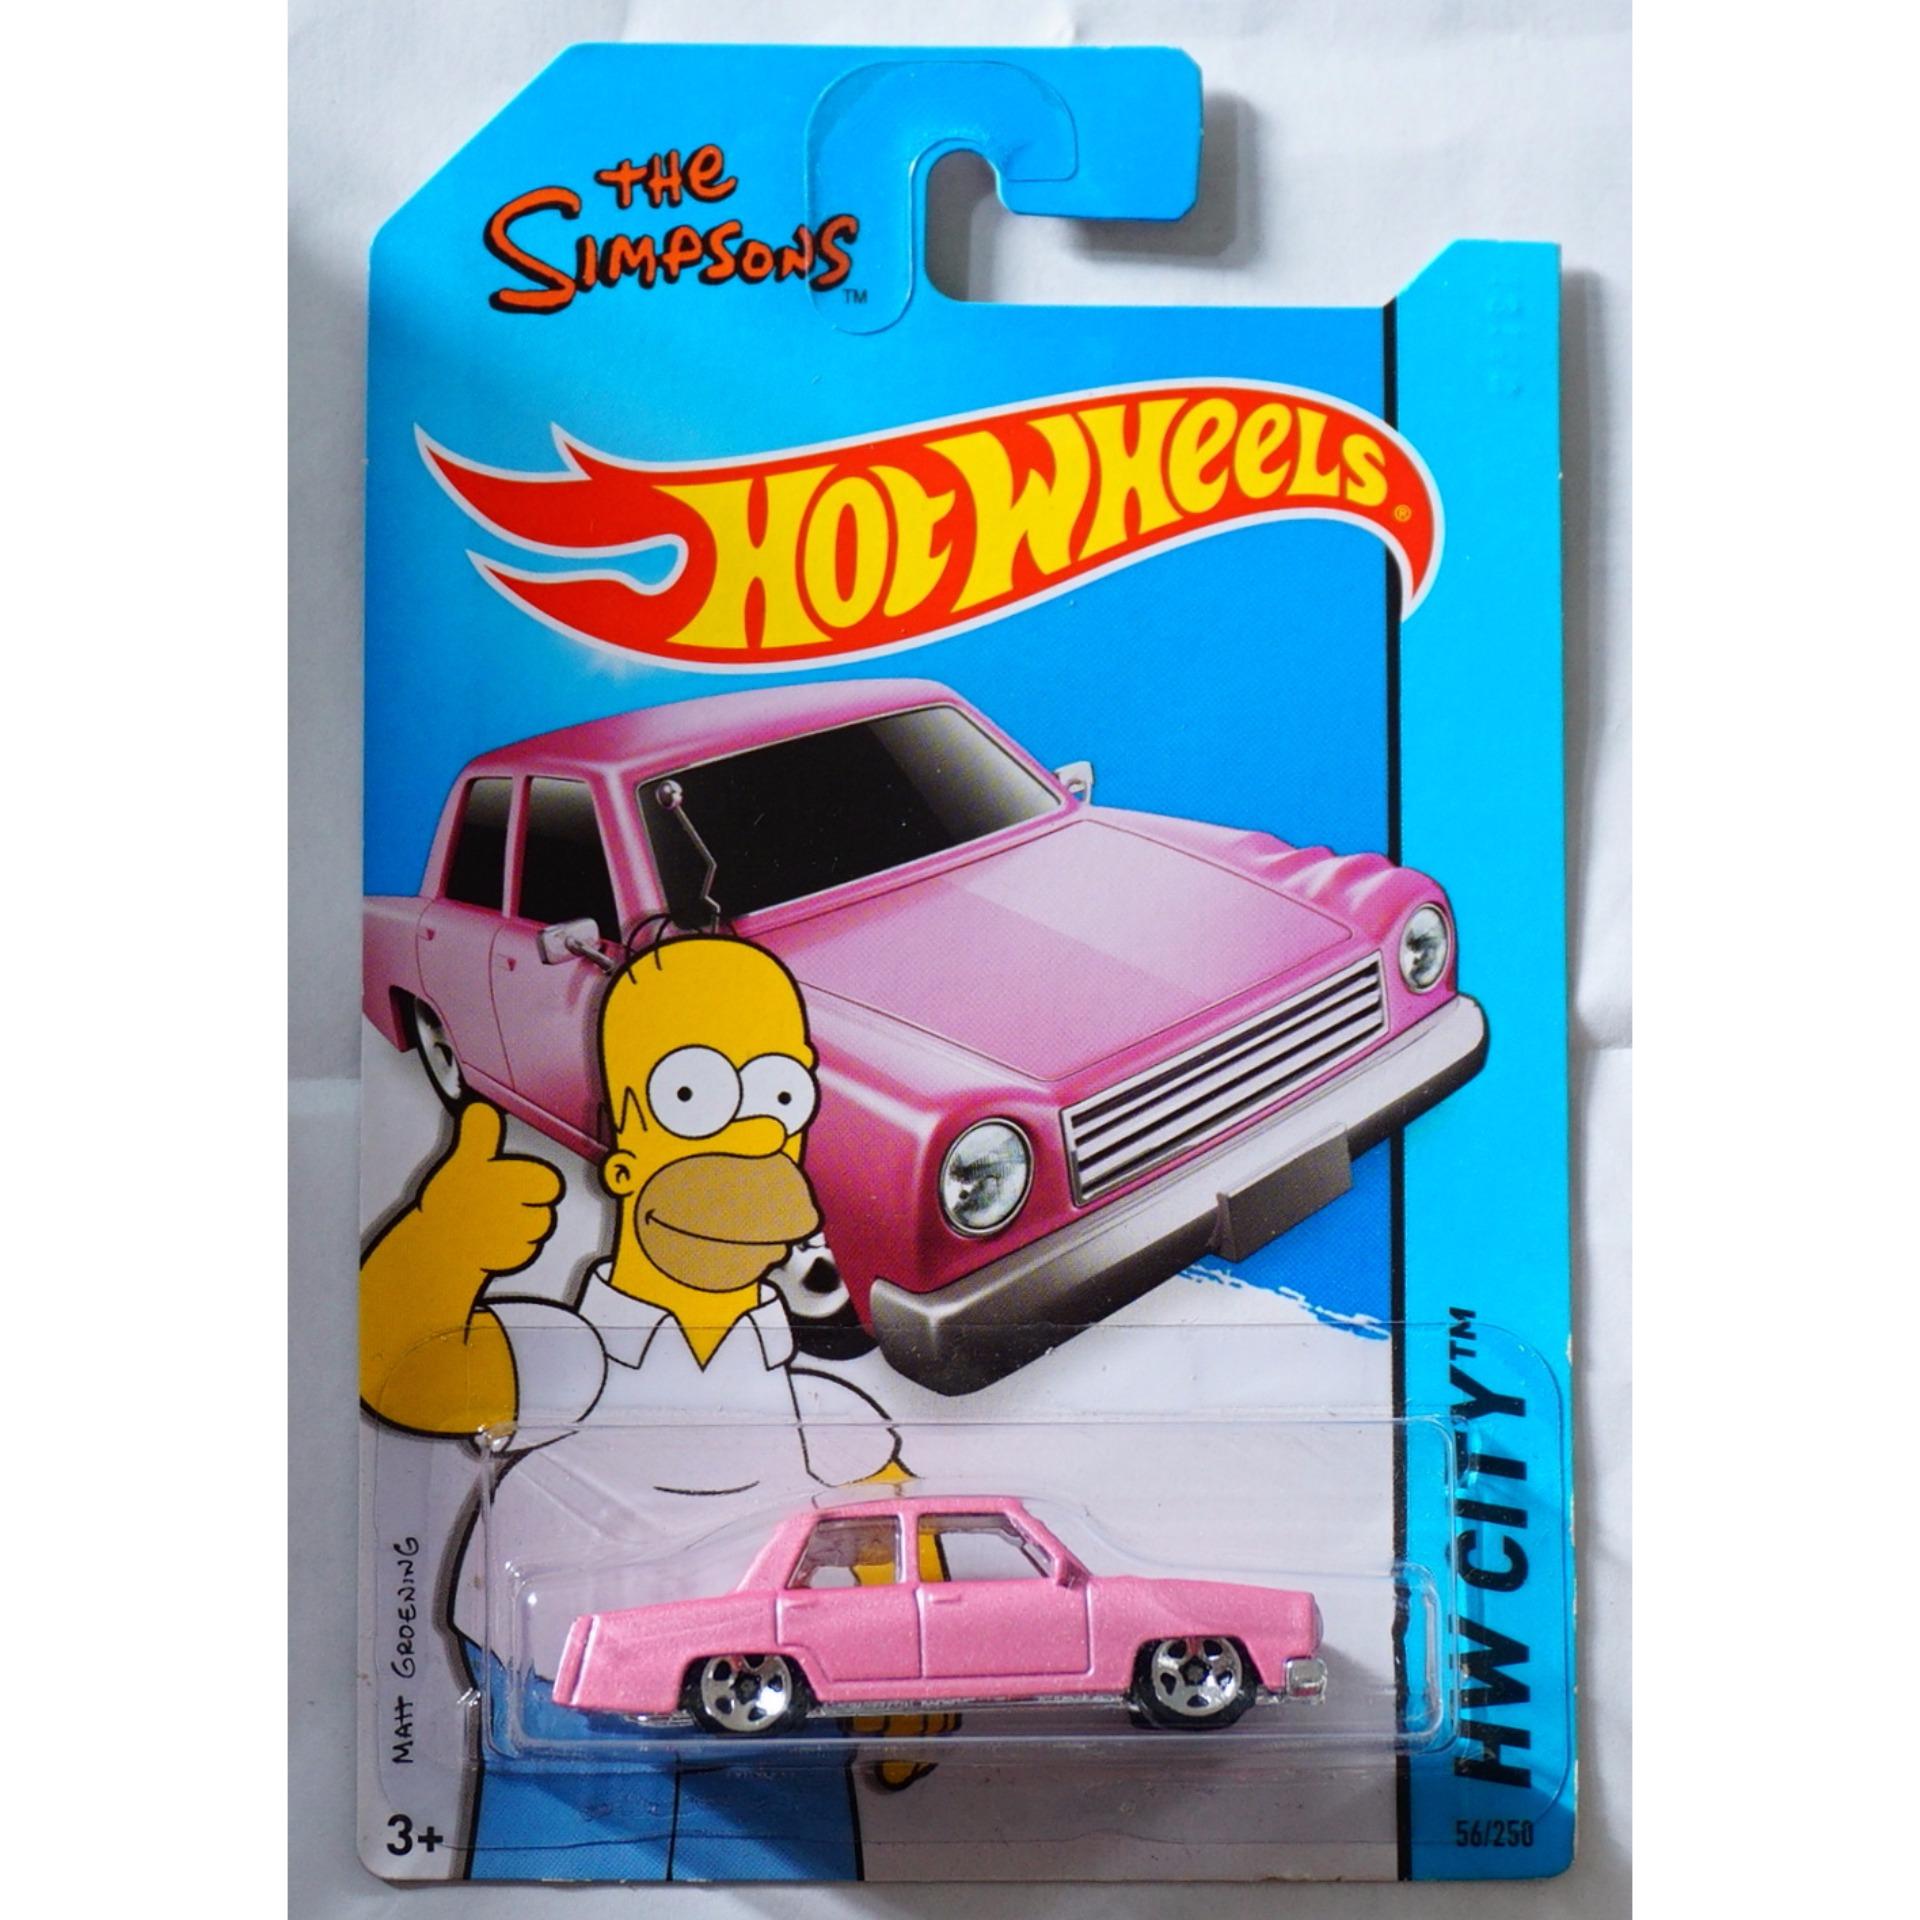 Xe ô tô mô hình tỉ lệ 1:64 Hot Wheels The Simpsons 56/250 (Hồng)